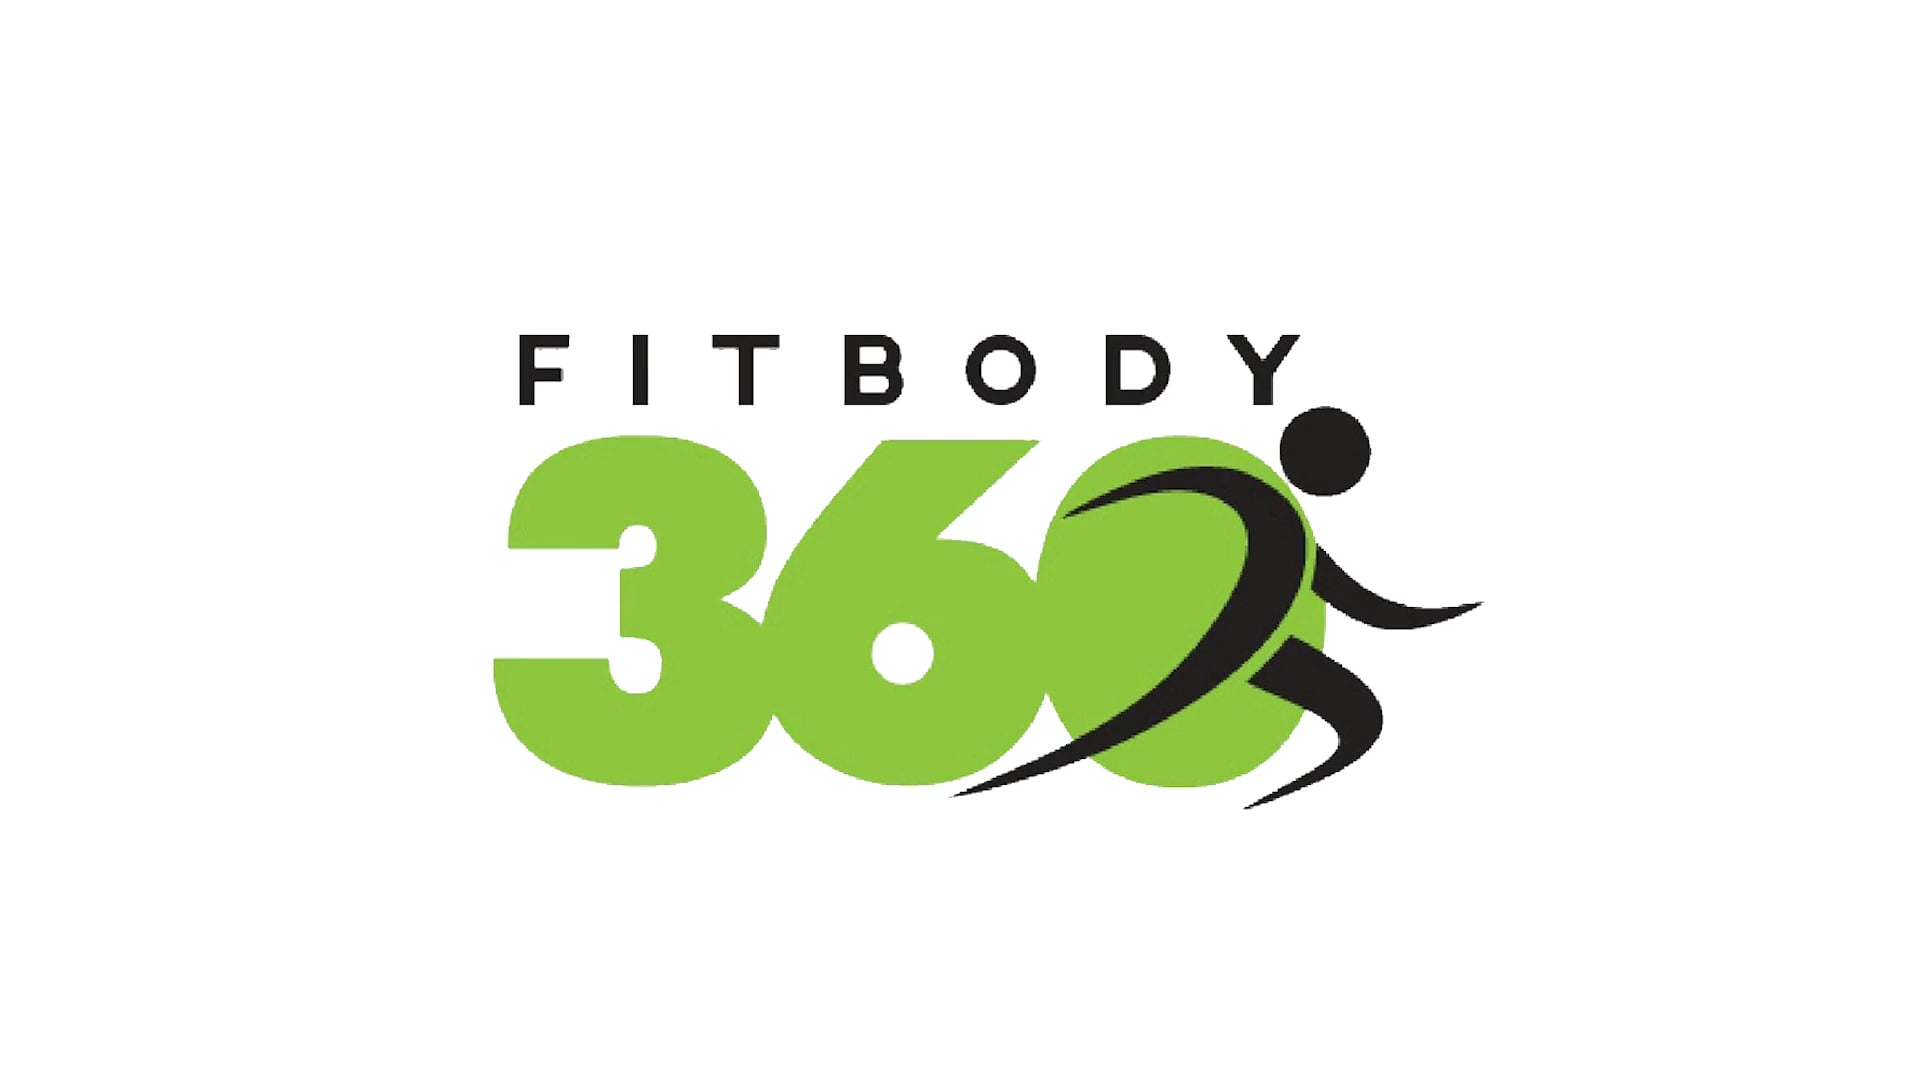 FitBody 360 Documentary